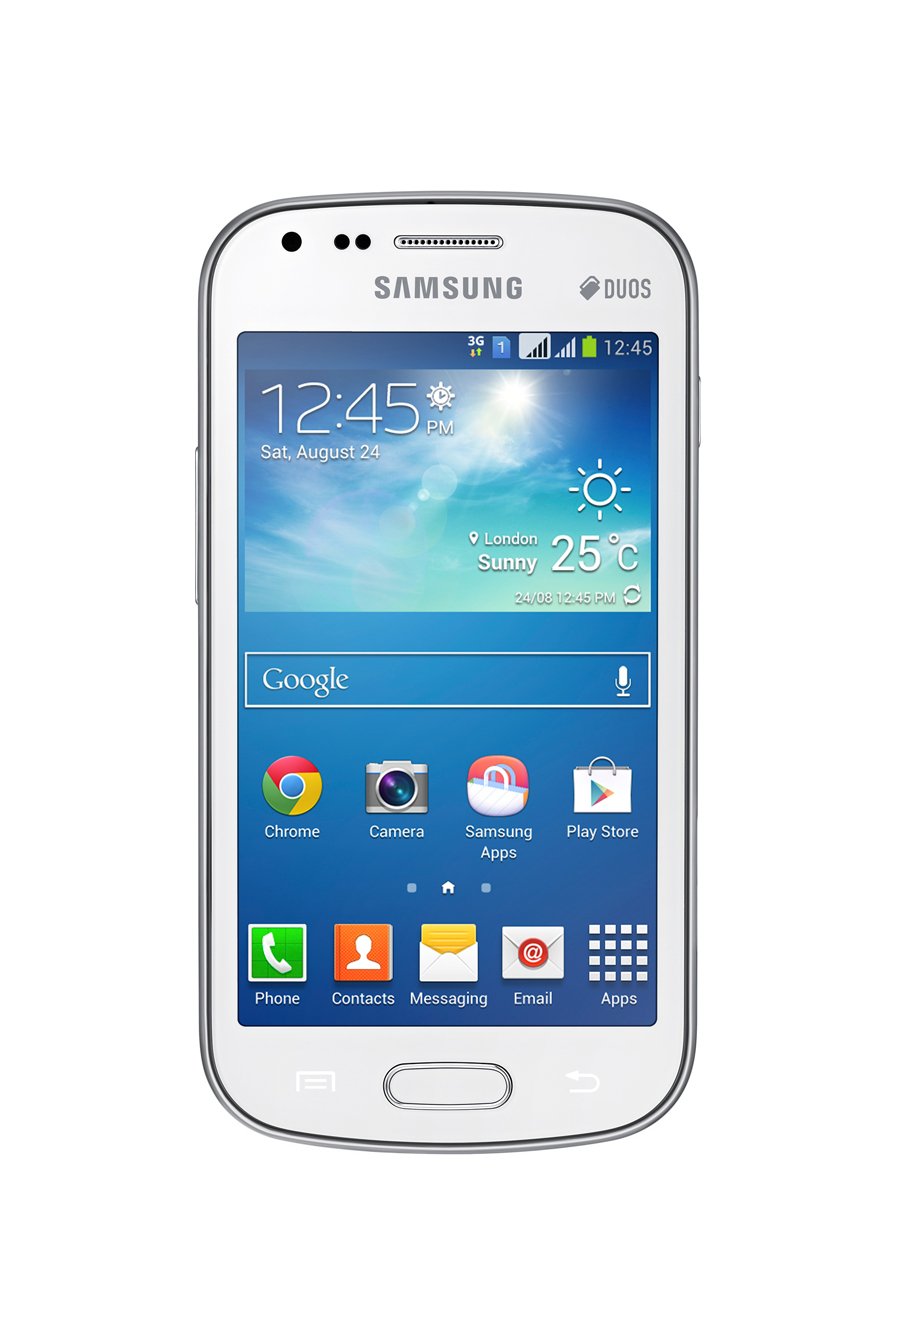  ms baratas para el Samsung Galaxy S Duos 2   Todas las Ofertas